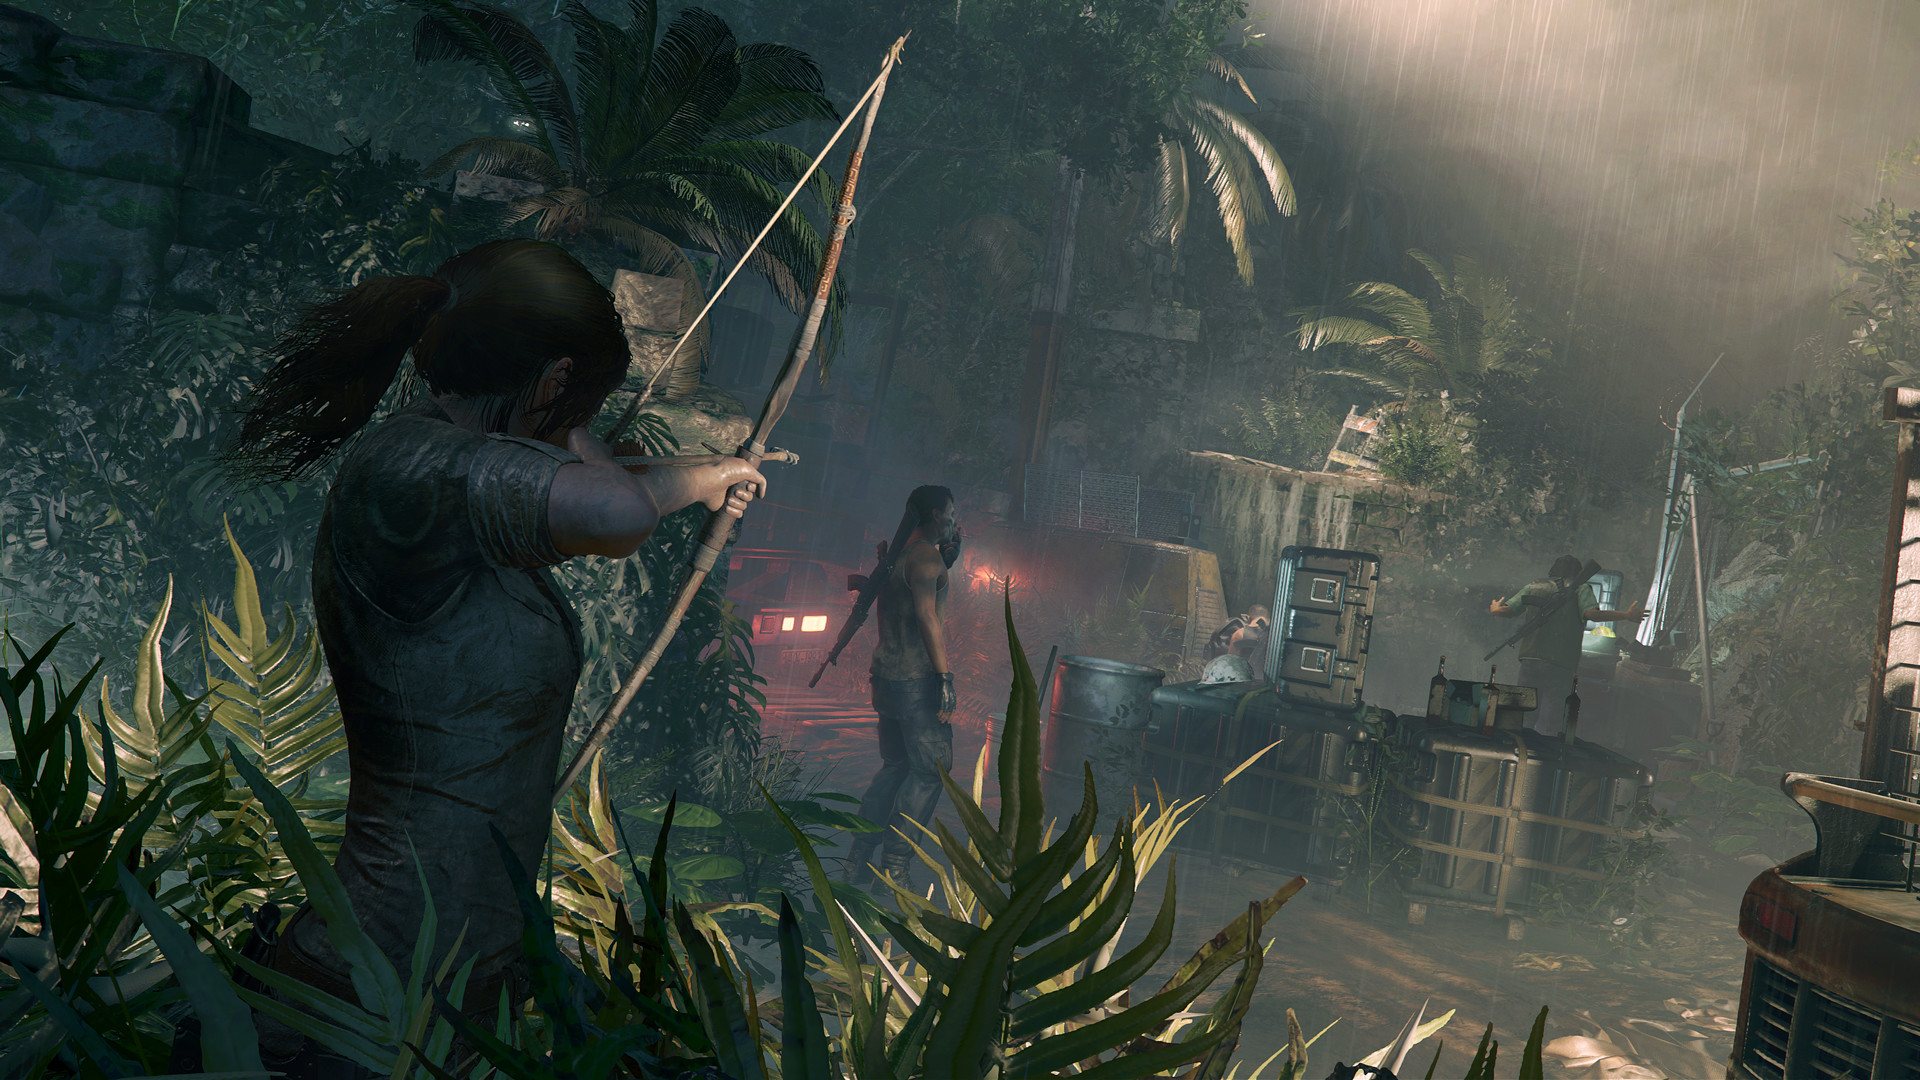 Shadow Of The Tomb Raider - Season Pass EU Steam CD Key